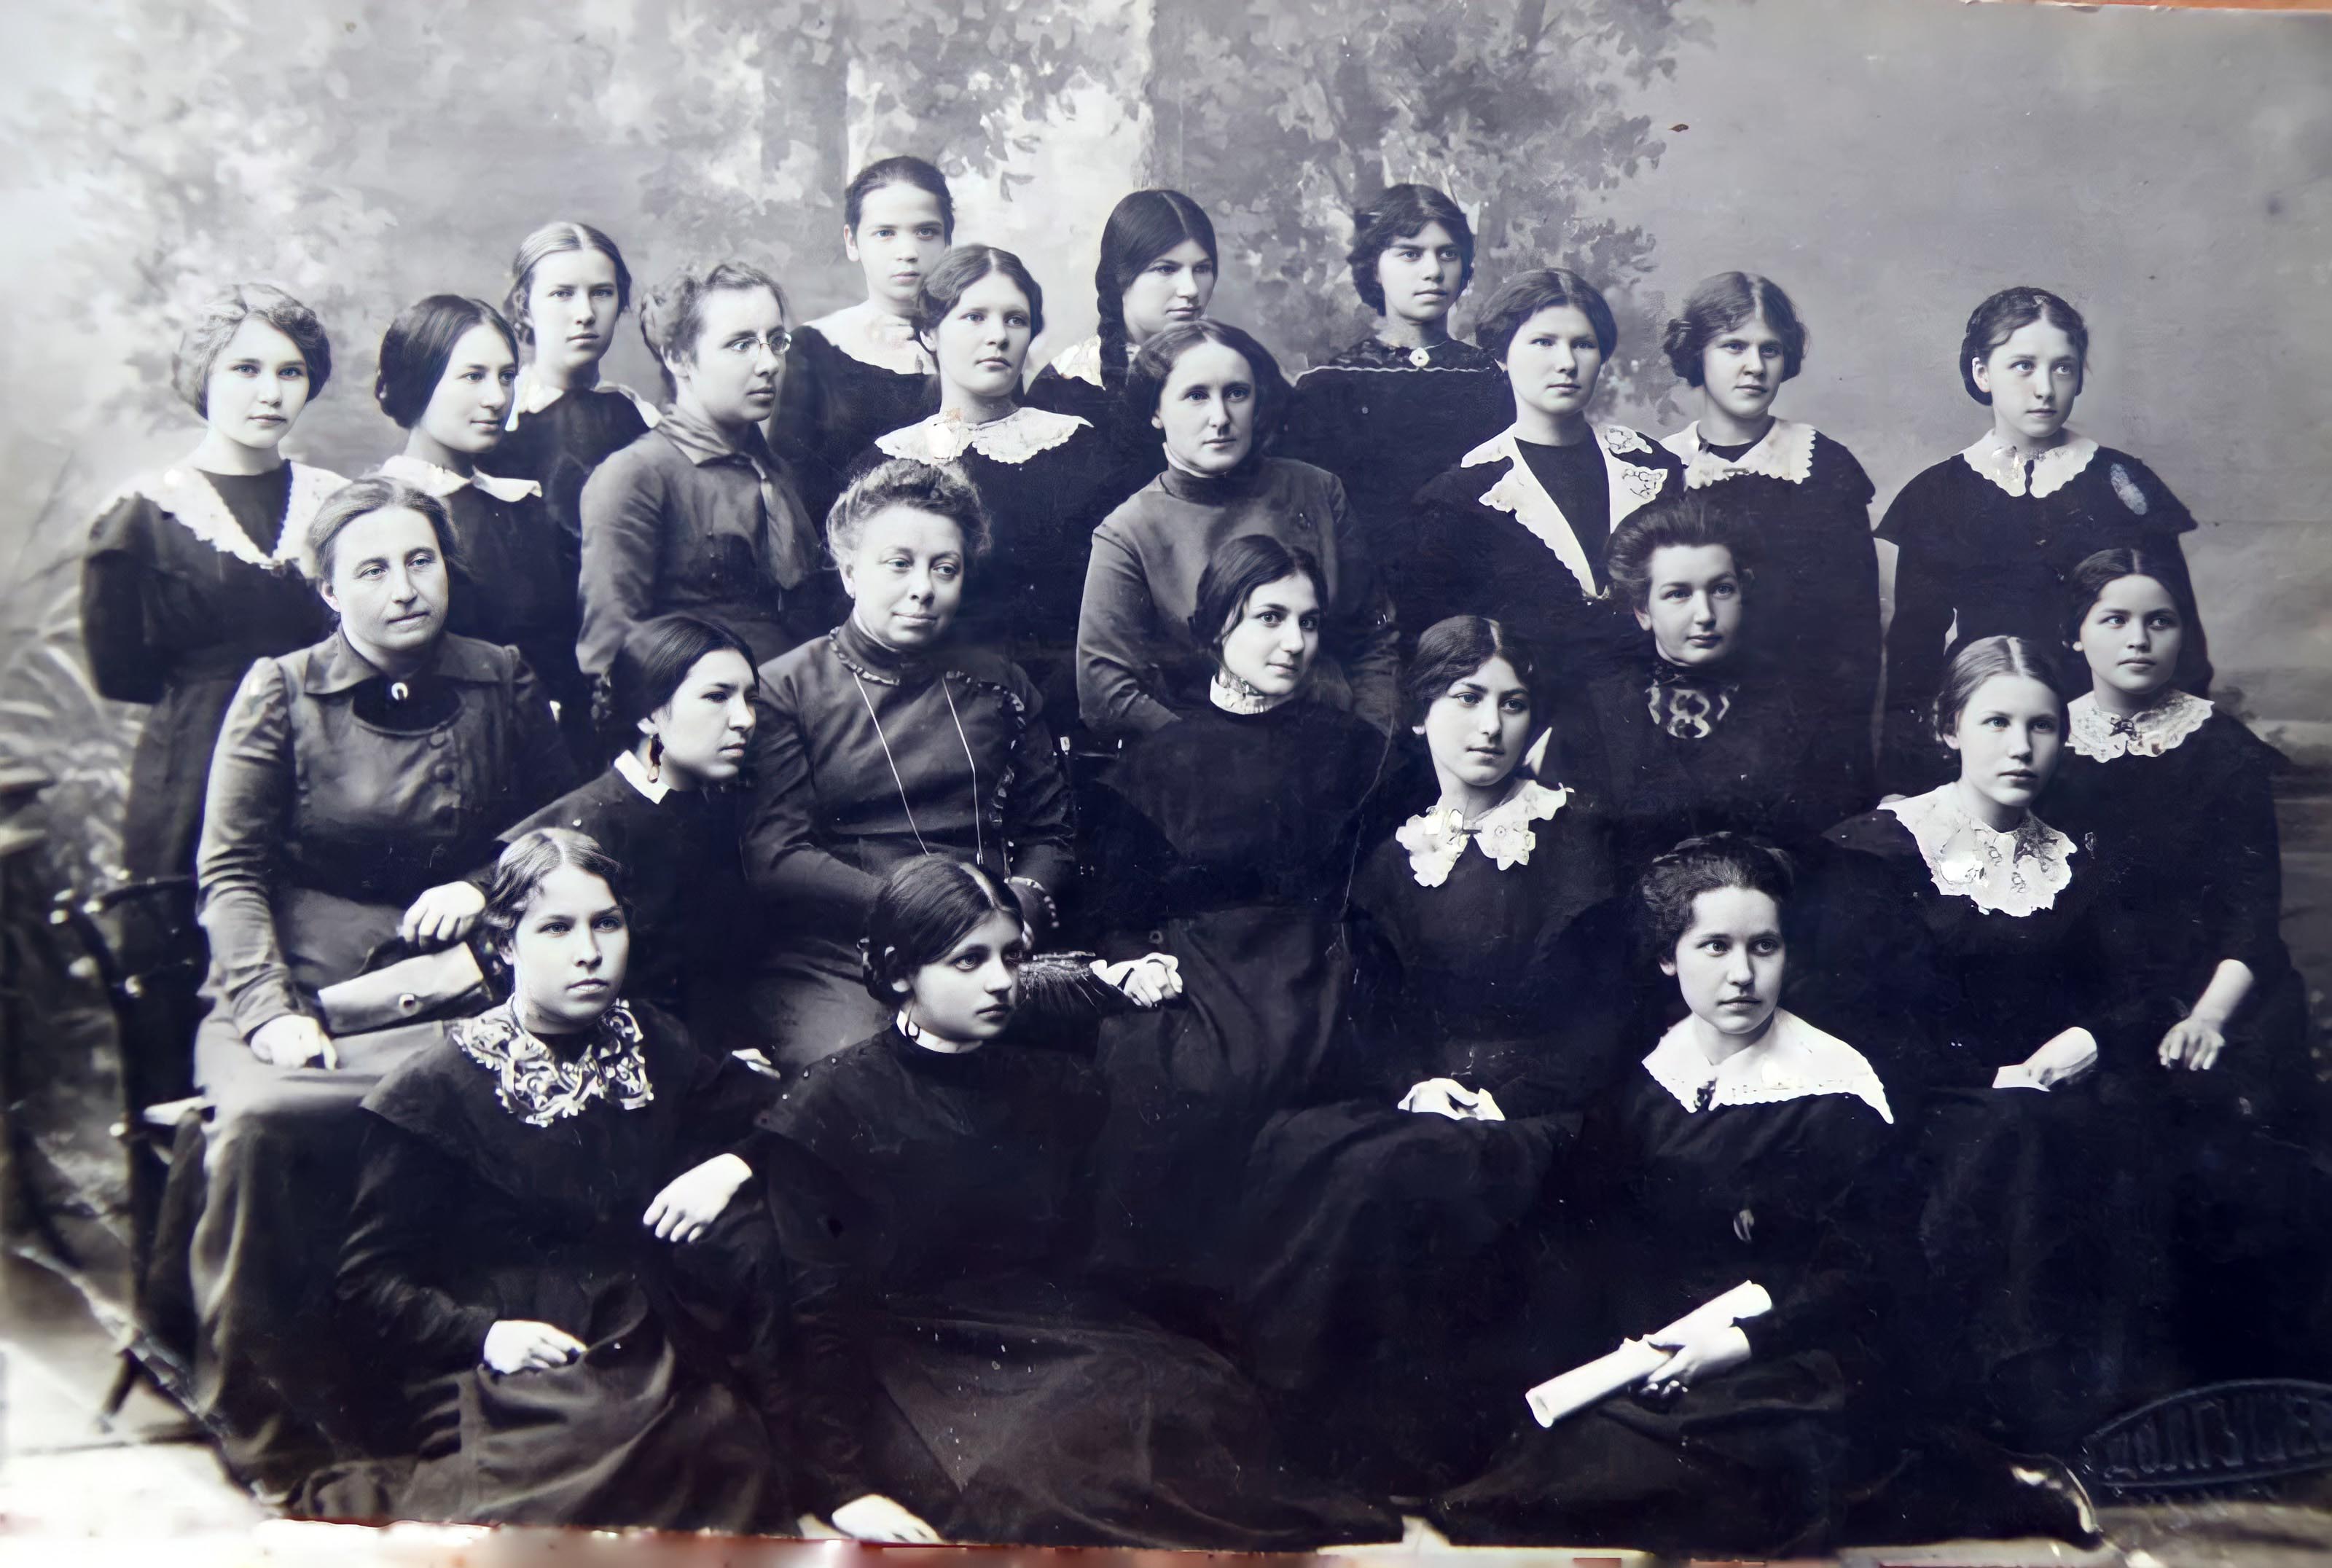 7-ой класс Кунгурской женской гимназии.1914 г.